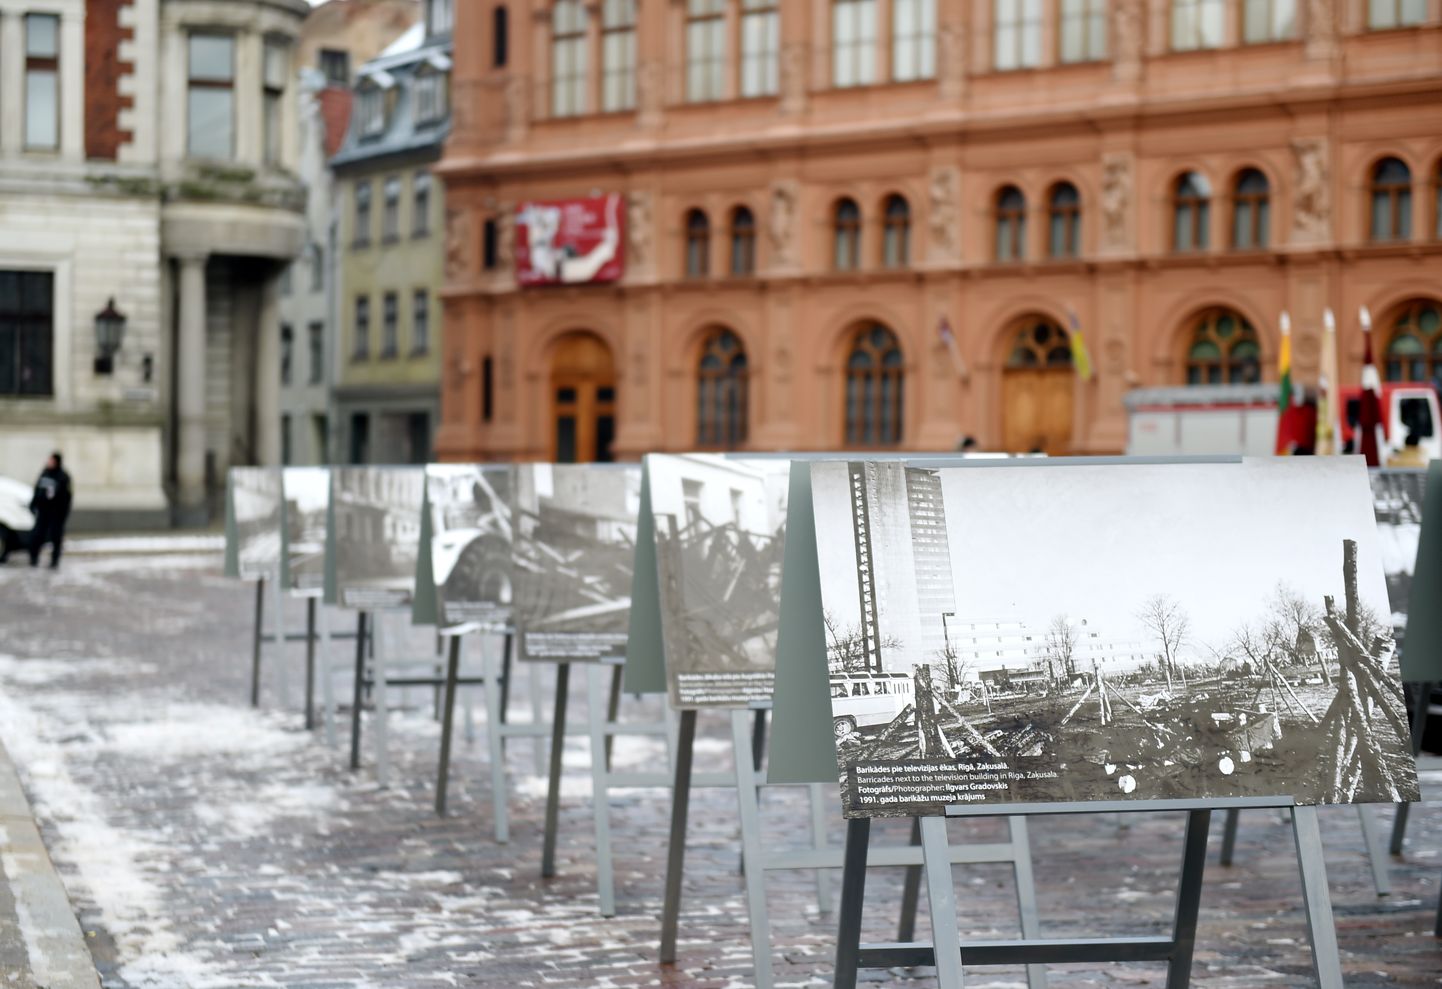 Izstāde "Barikādes Latvijā 1991 un barikādes Ukrainā 2014-2022" 1991. gada barikāžu atceres piemiņas pasākumā Doma laukumā.